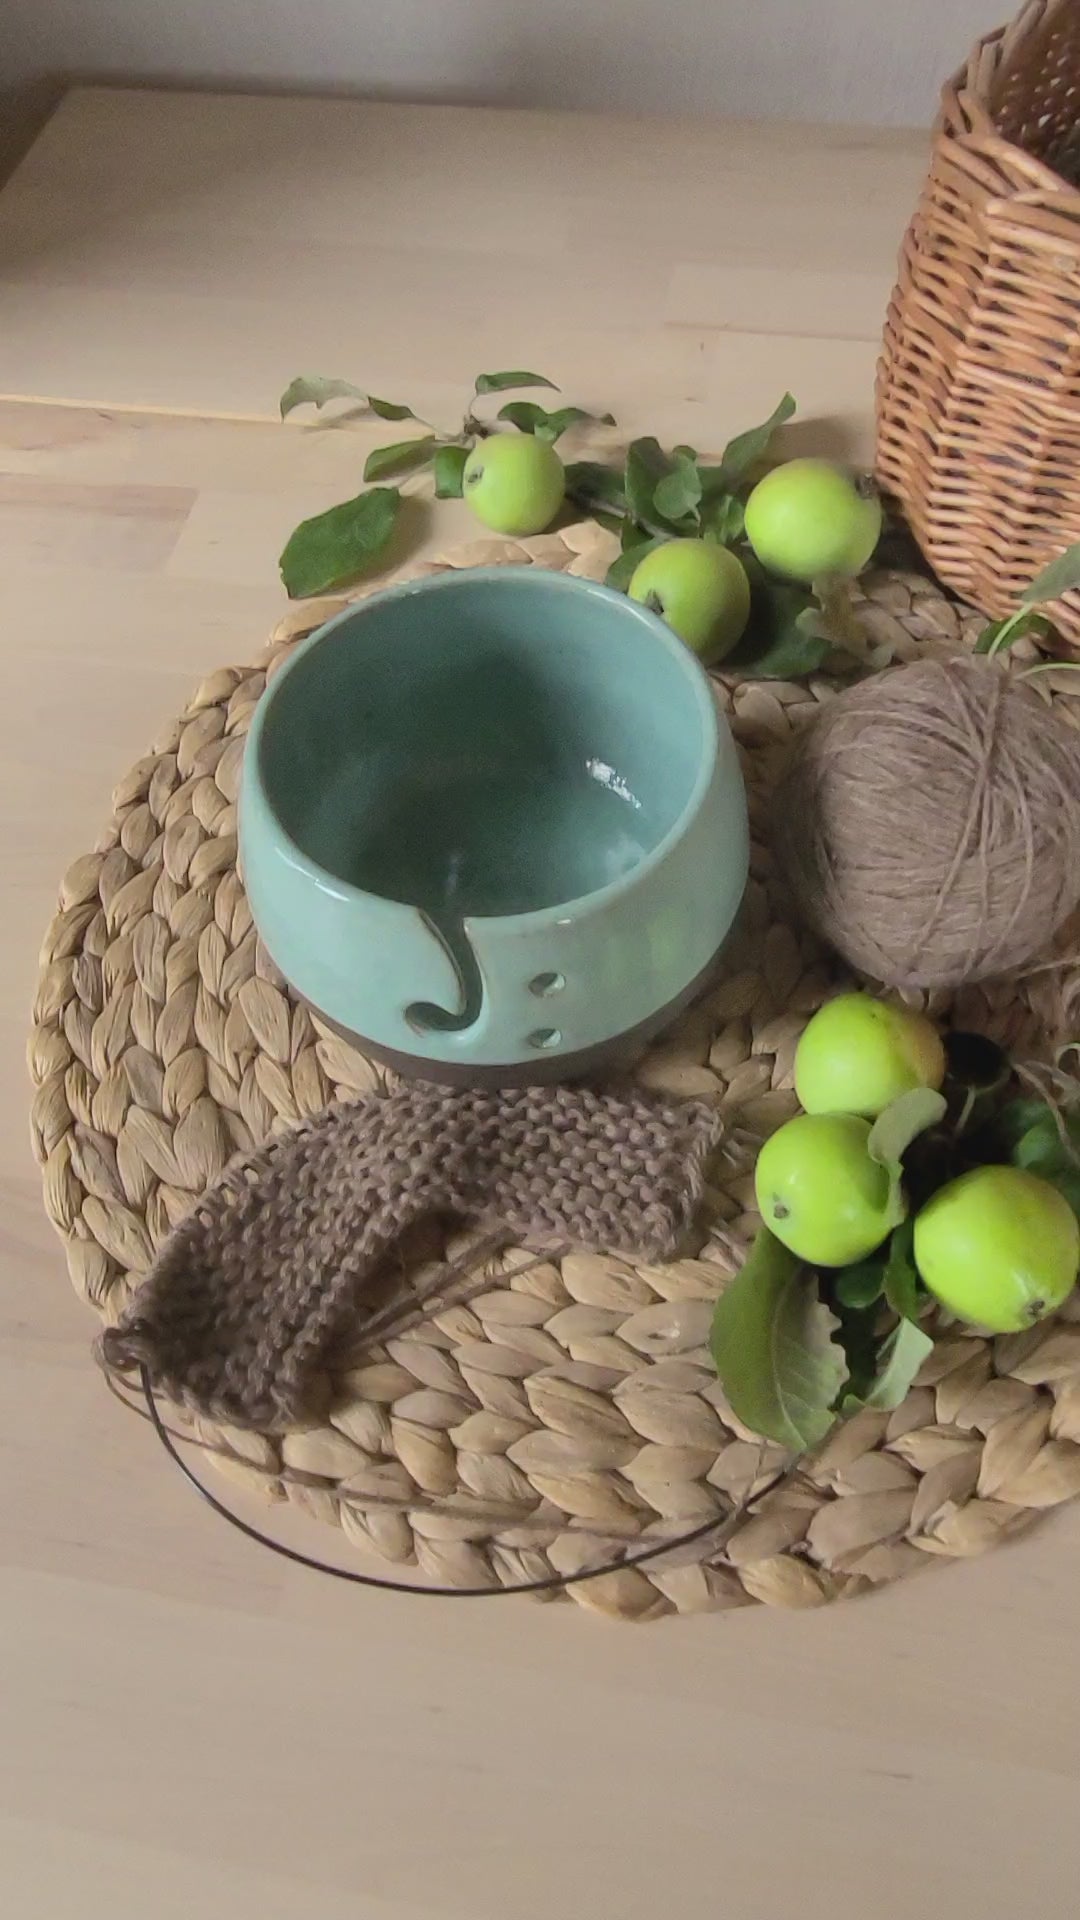 Maasta Ceramic Yarn Bowl Large - Baaad Anna's Yarn Store